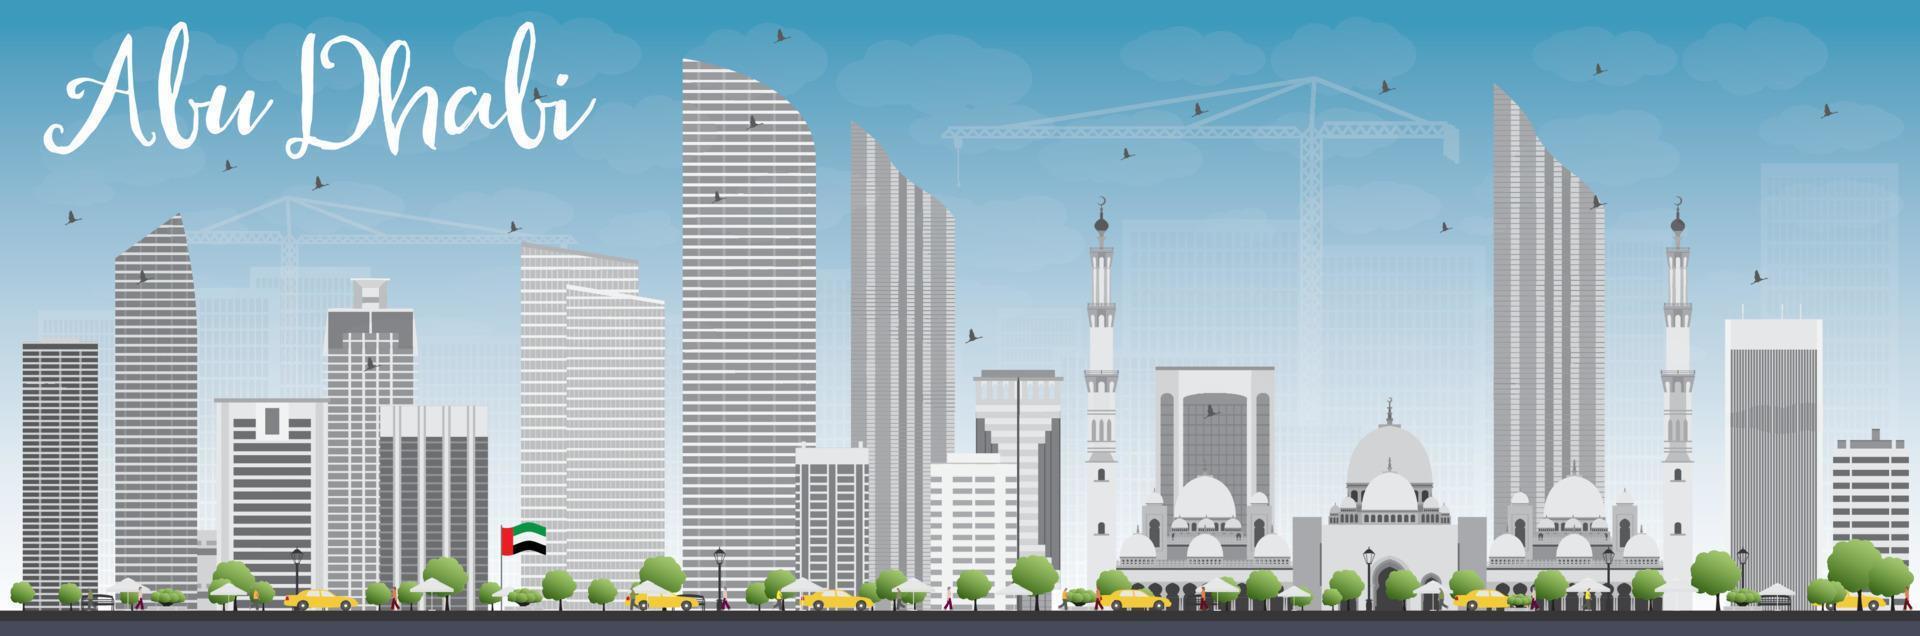 abu dhabi city skyline mit grauen gebäuden und blauem himmel. vektor